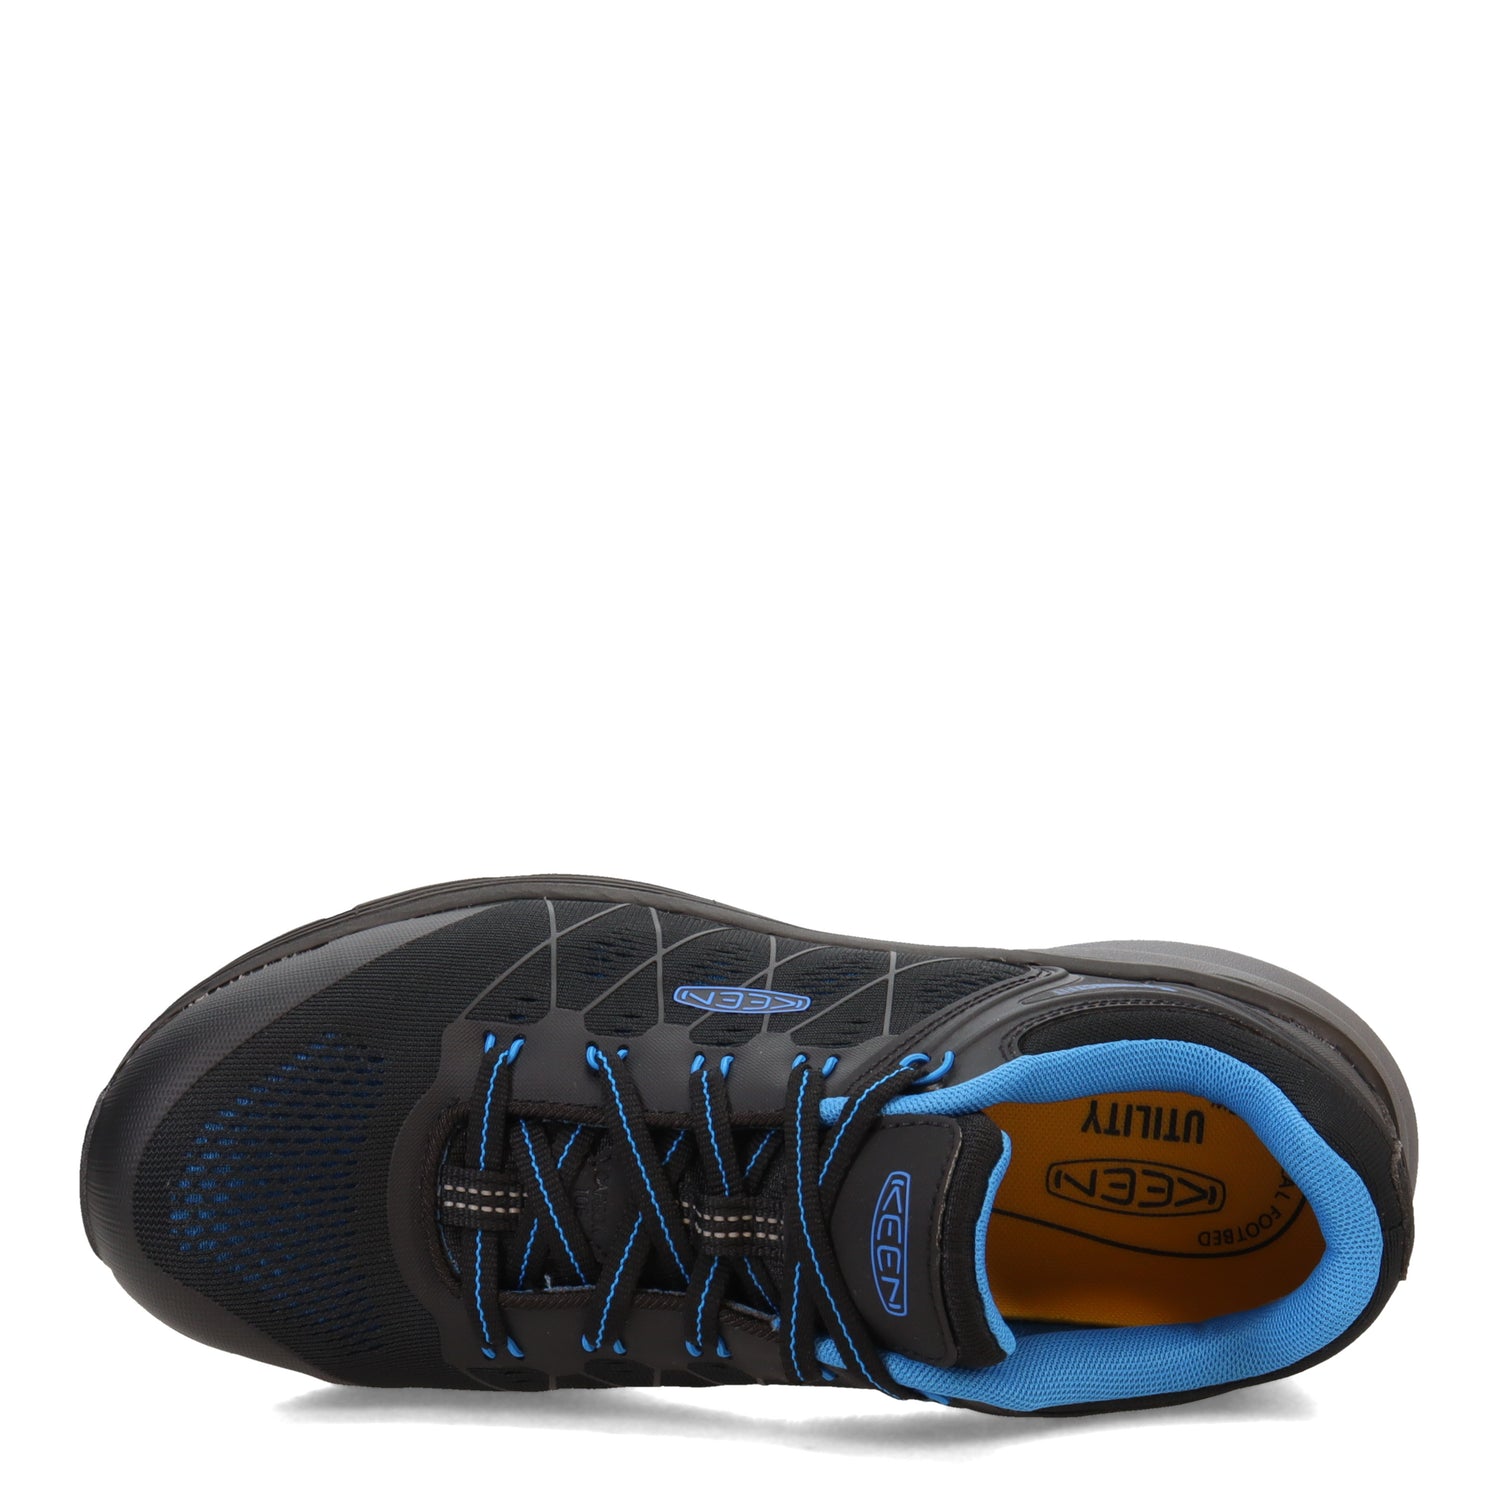 Peltz Shoes  Men's Keen Utility Vista Energy Carbon Fiber Work Shoe Blue/Black 1024581